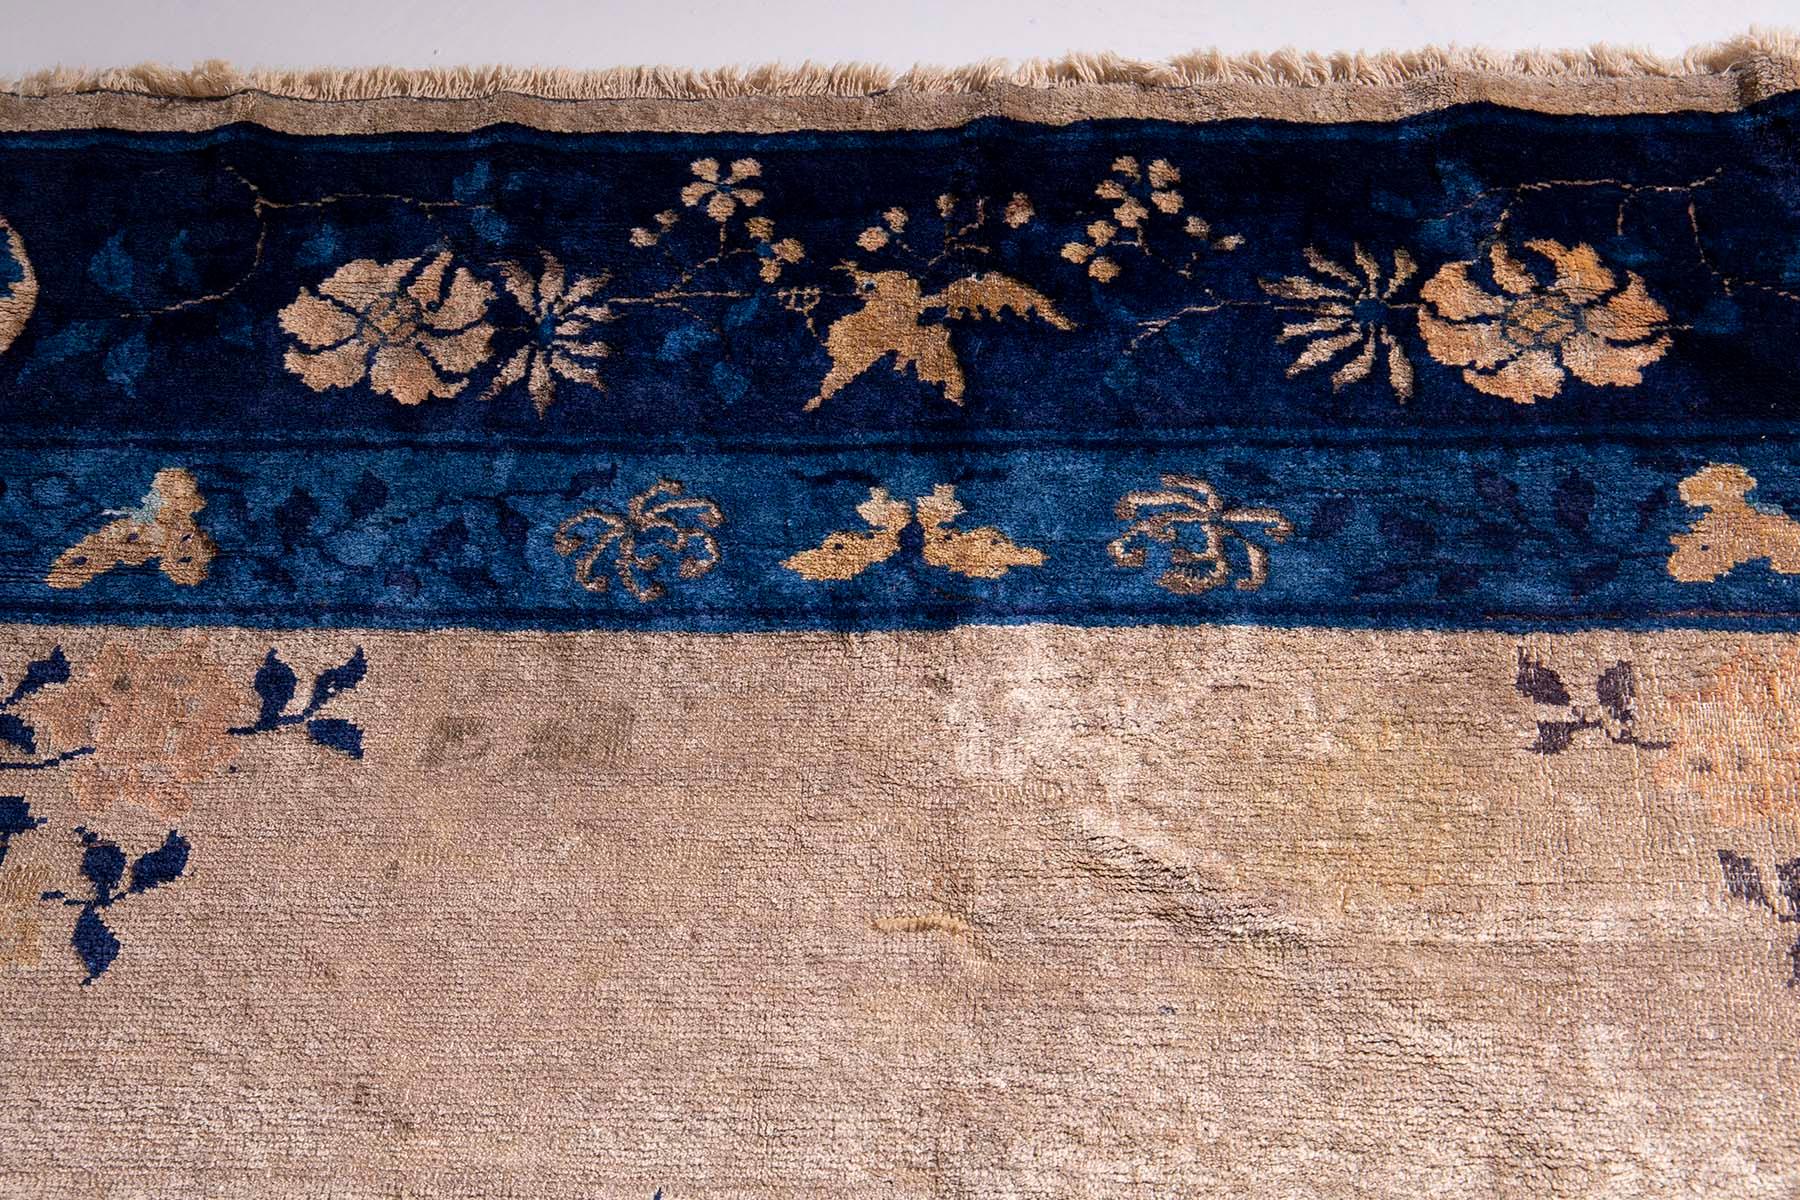 In der Stille eines schwach beleuchteten Raumes liegt ein Schatz aus einer anderen Zeit - ein antiker chinesischer Peking-Teppich, ein Zeugnis der Handwerkskunst und der Kunstfertigkeit, die die Zeiten überdauert. Aus der Zeit um die